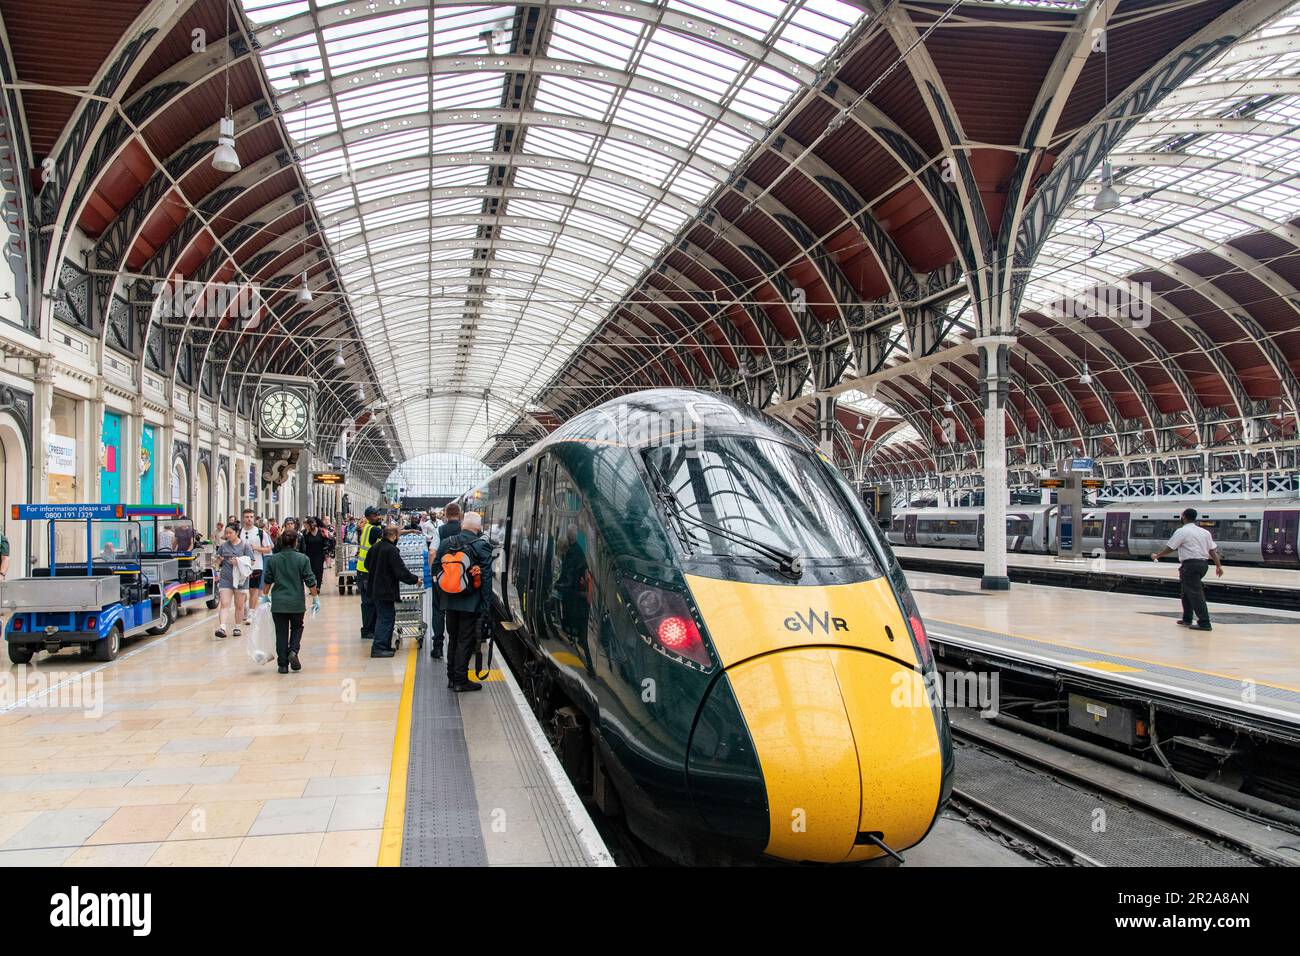 Londra, Inghilterra - agosto 2022; vista sui binari con i treni in attesa della stazione di Paddington con architettura in stile vittoriano Foto Stock